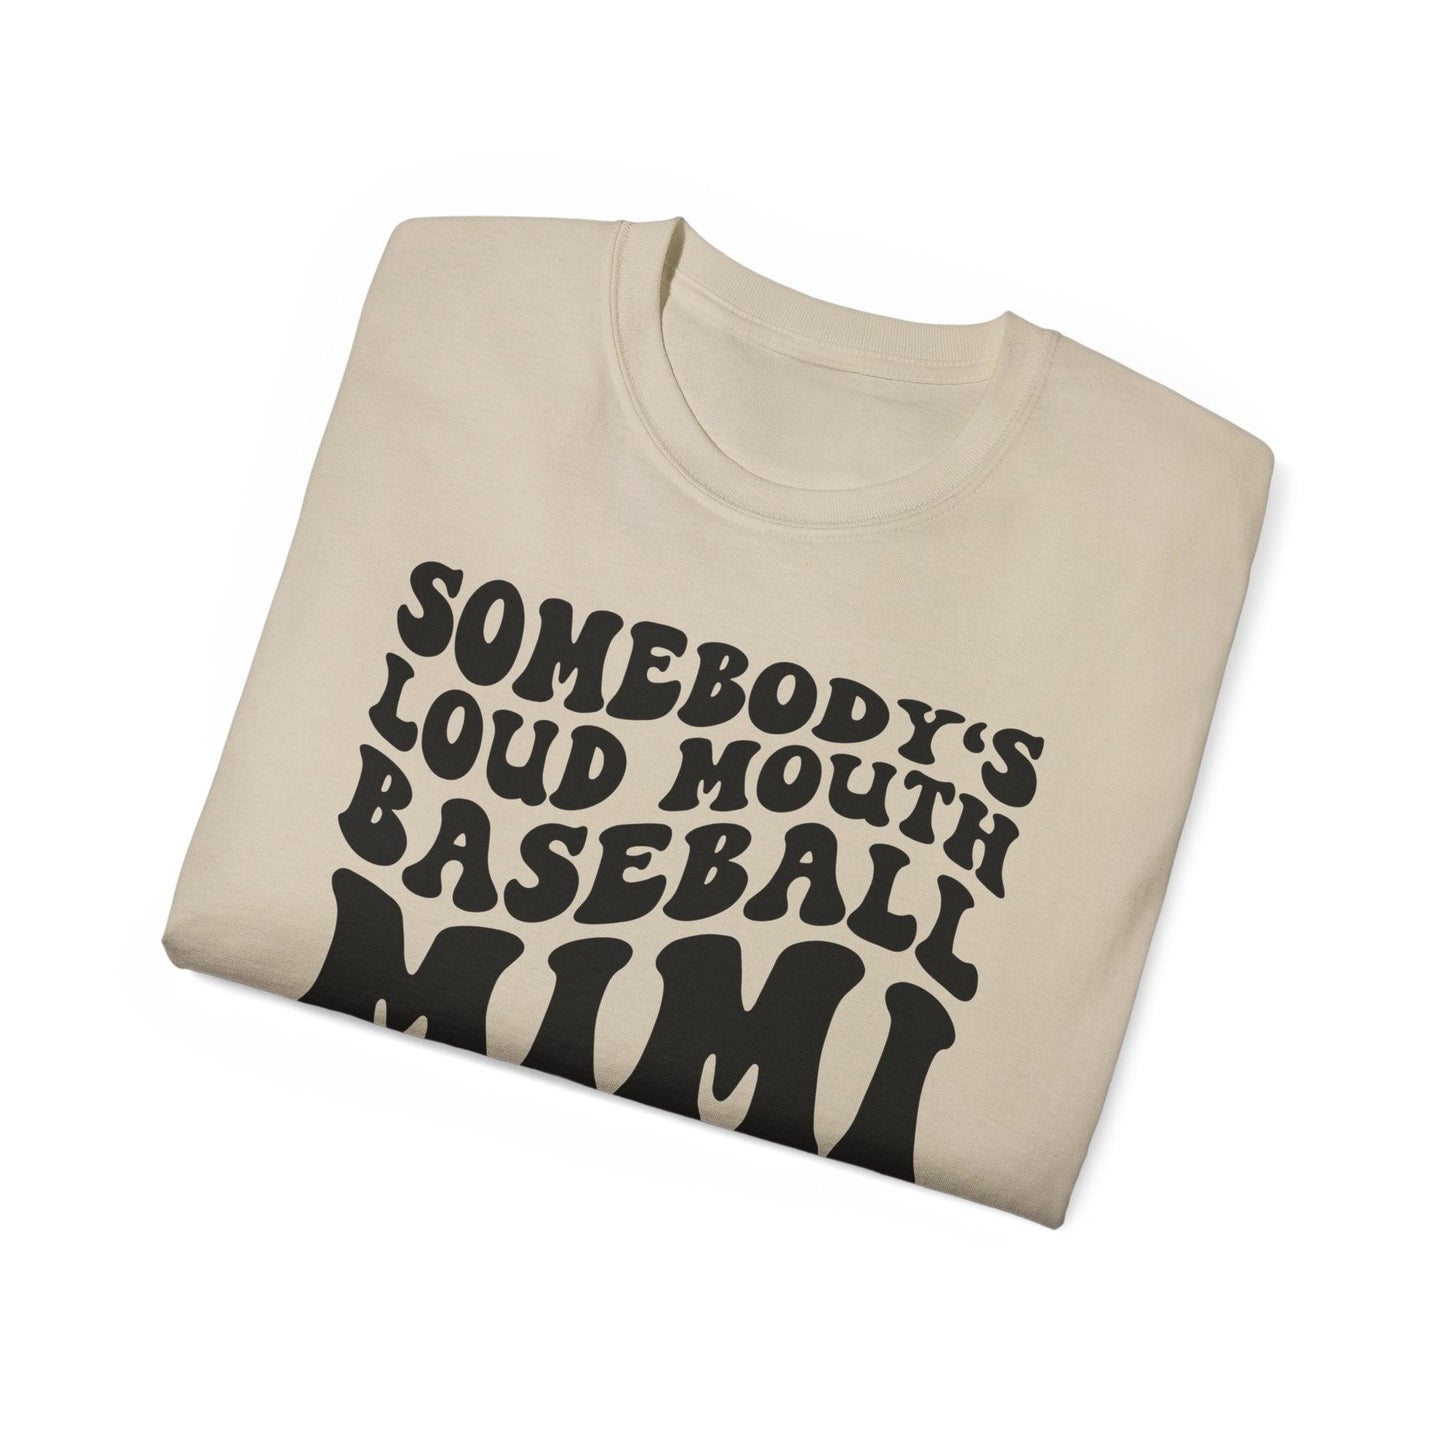 Somebody's Loud Mouth Baseball Mimi - BentleyBlueCo